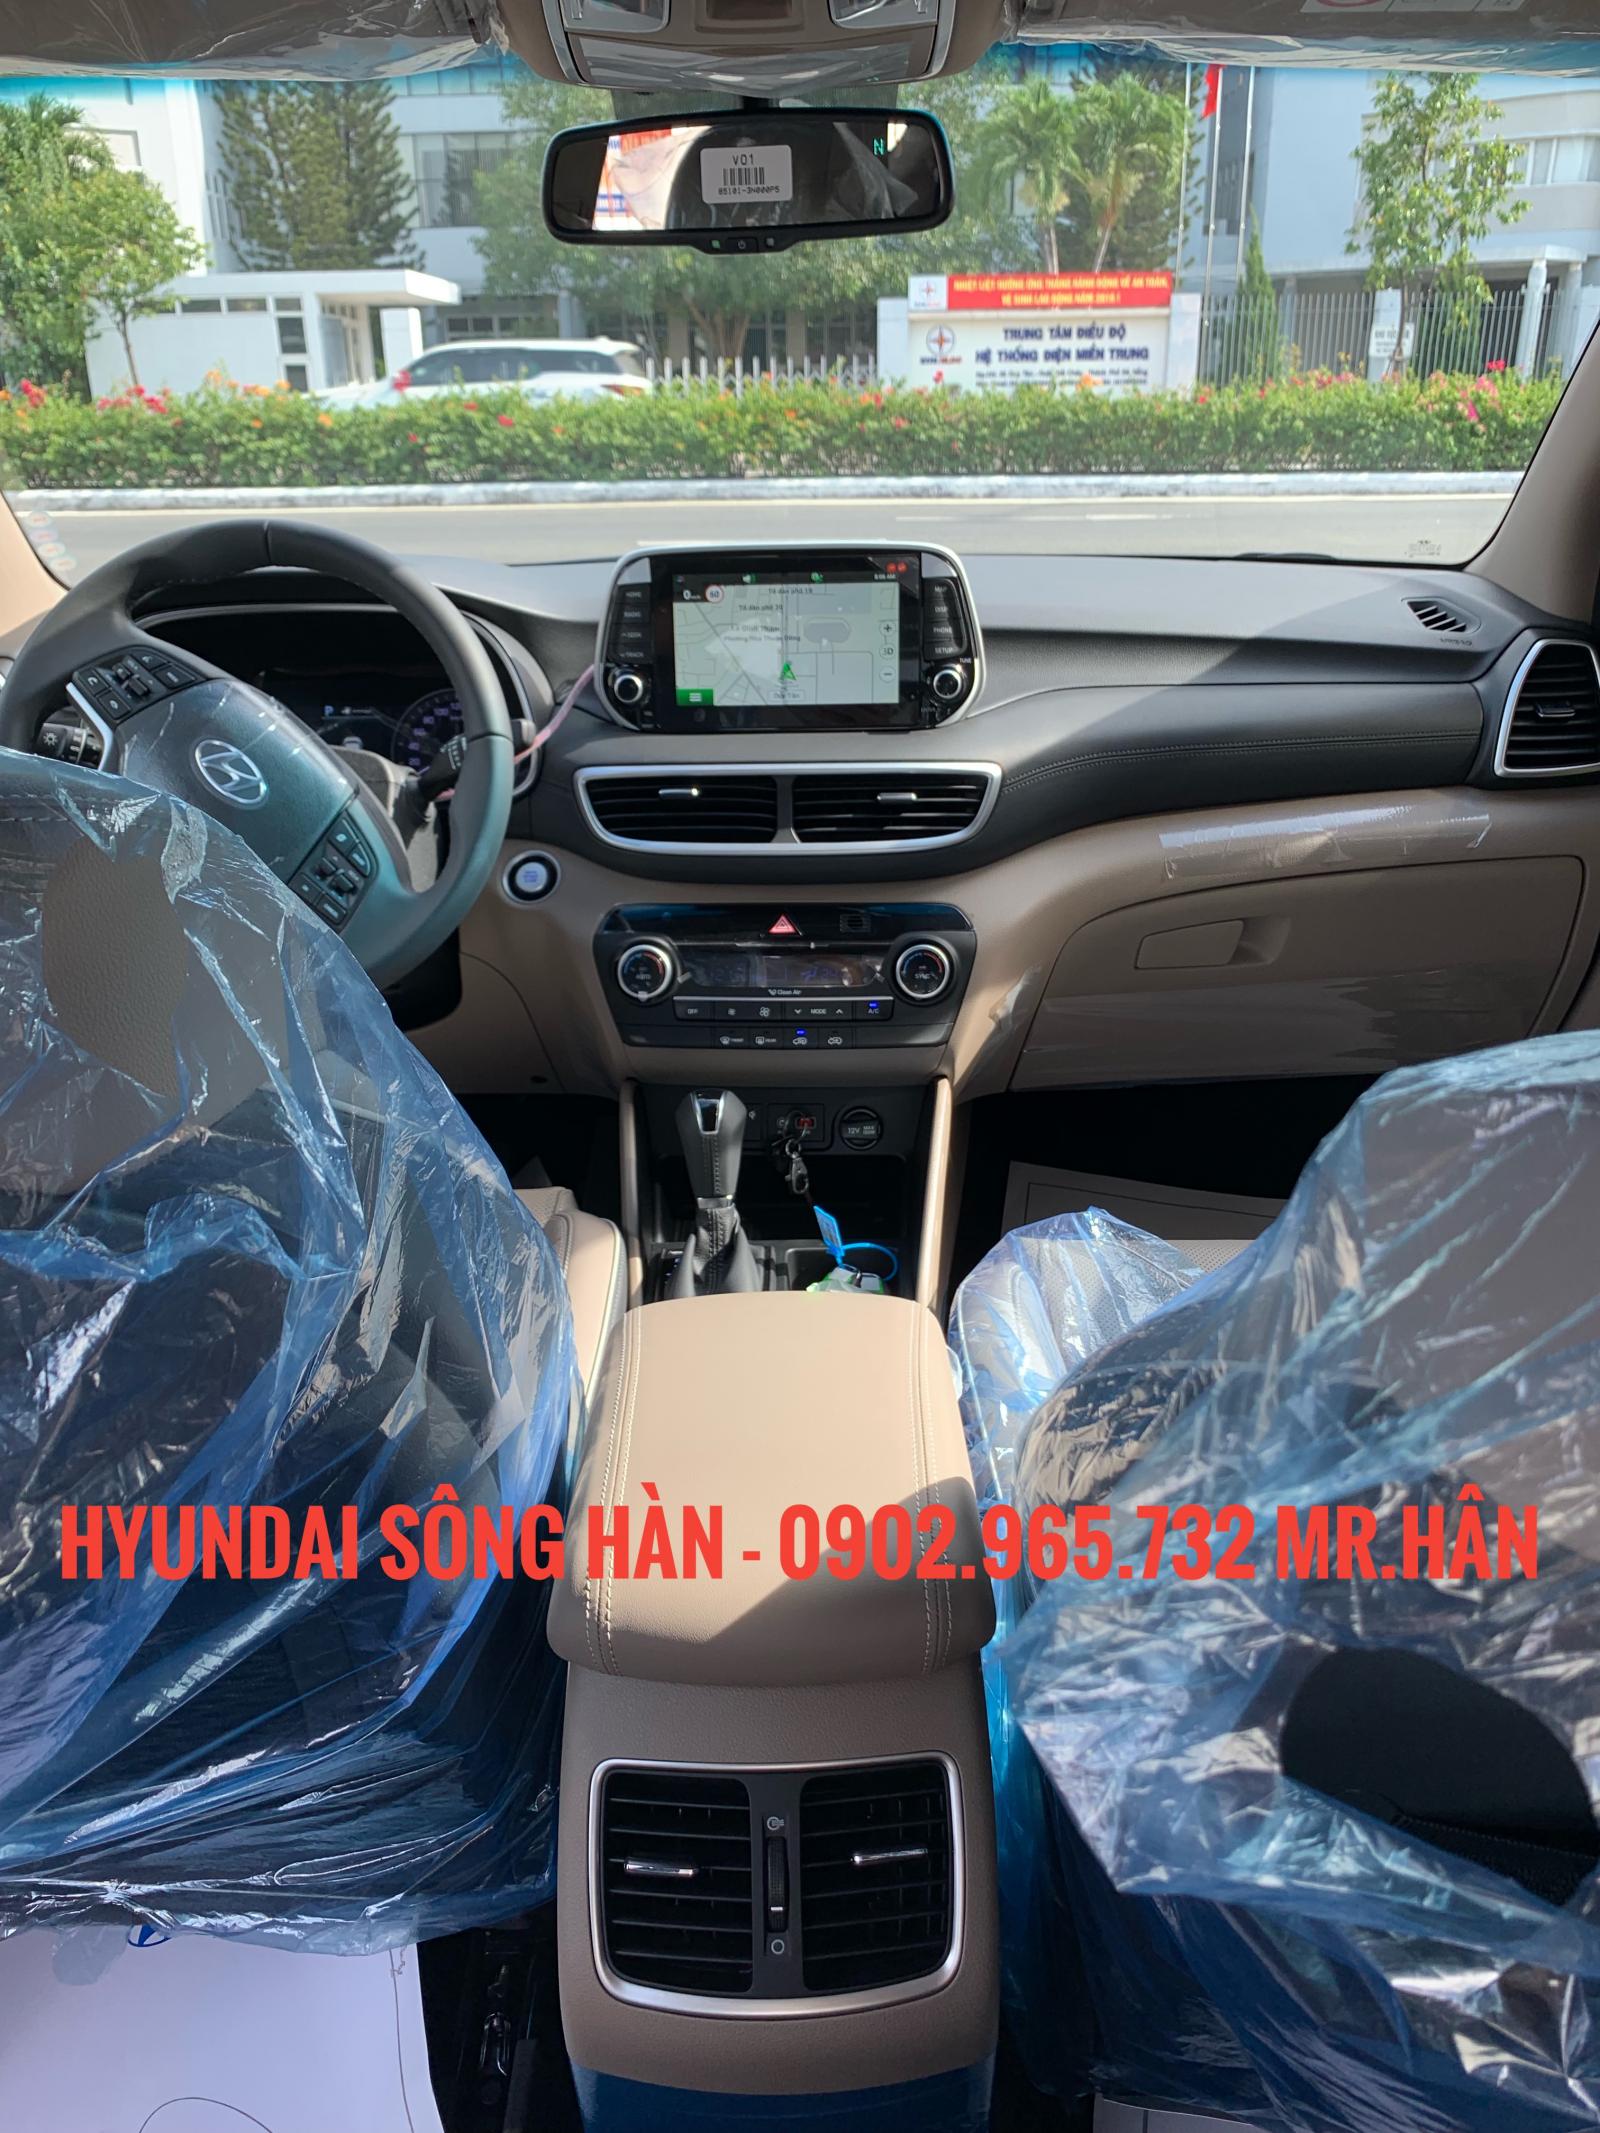 Hyundai Tucson 2019 - Bán xe Hyundai Tucson đời 2019, màu đỏ - giao ngay, hỗ trợ vay vốn 80% LH: 0902.965.732 Hữu Hân